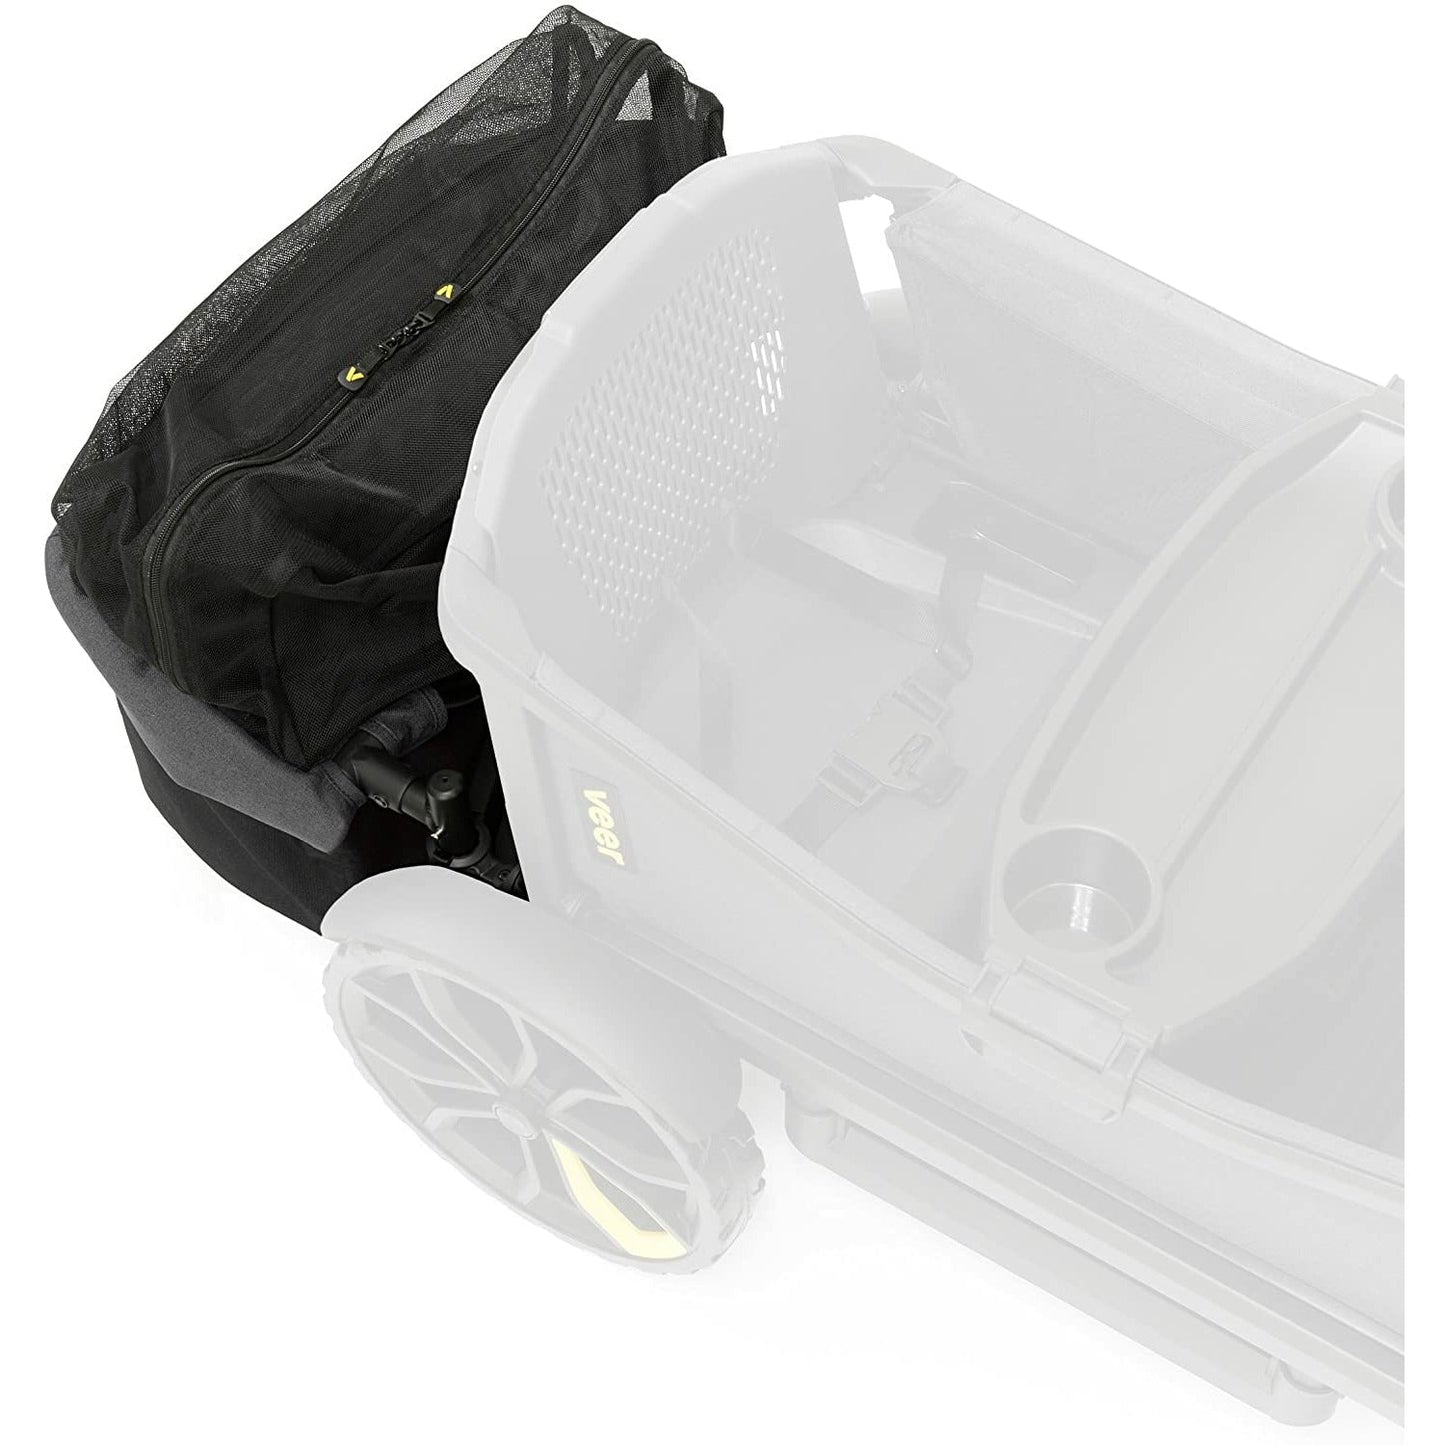 Veer Foldable Rear Storage Basket - Little Kids Business